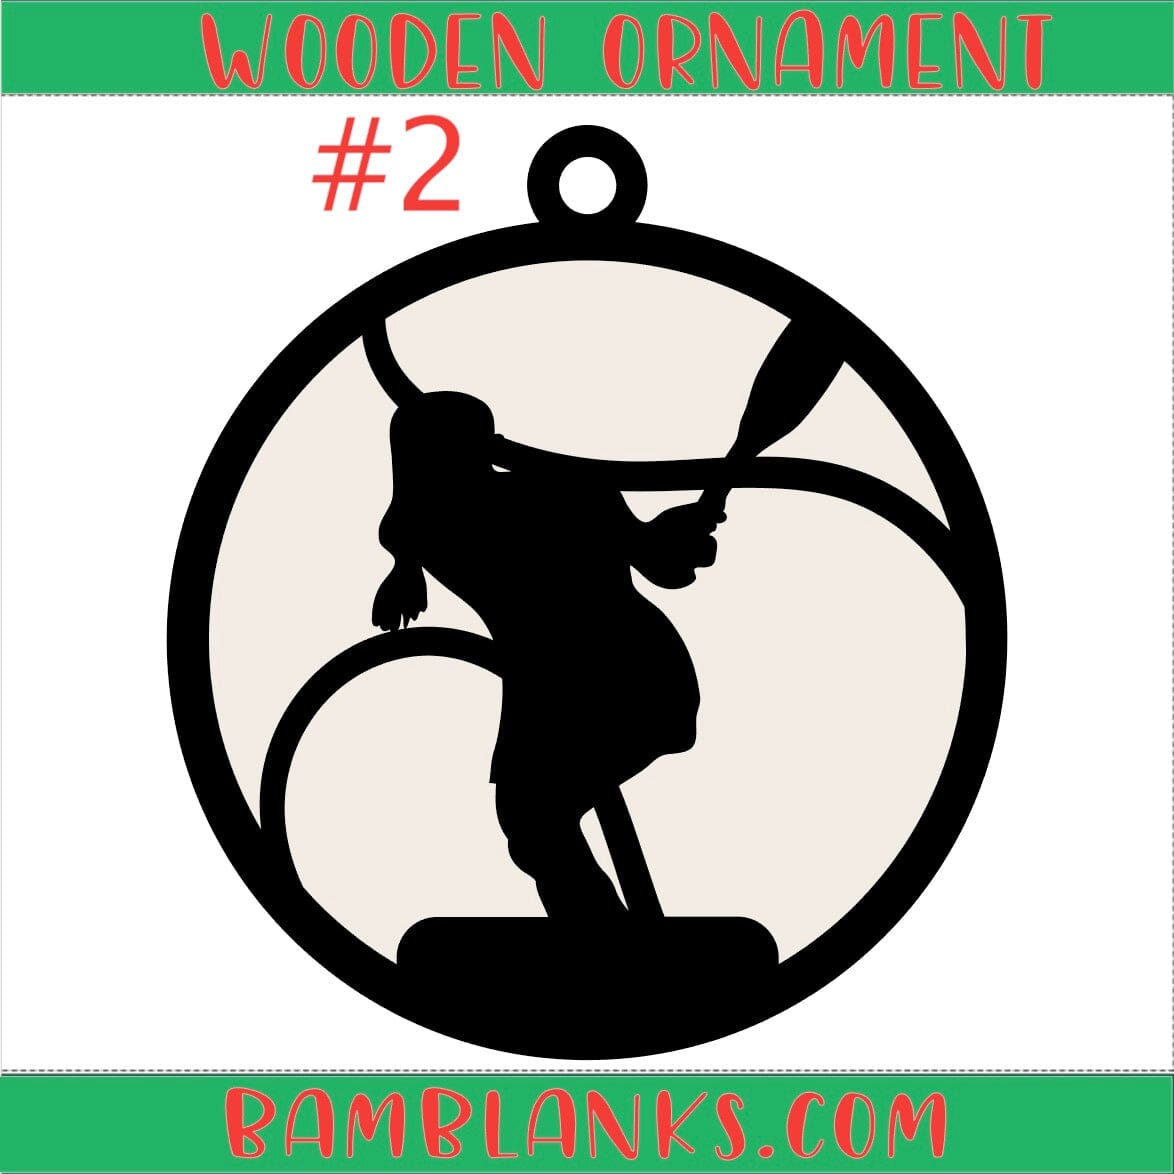 Tennis - Wood Ornament #W173